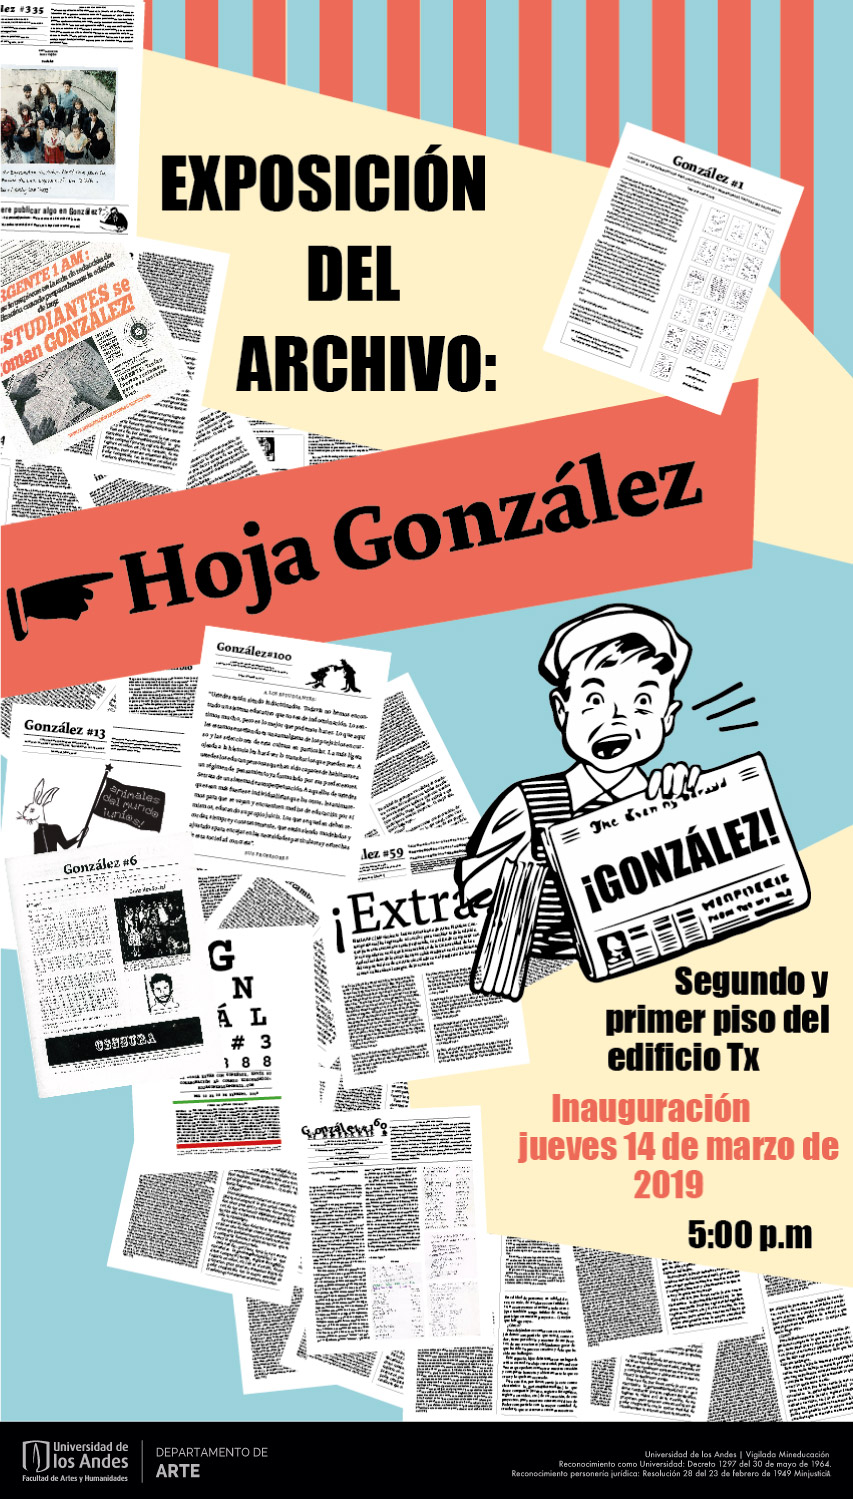 Inauguración exposición del archivo Hoja González